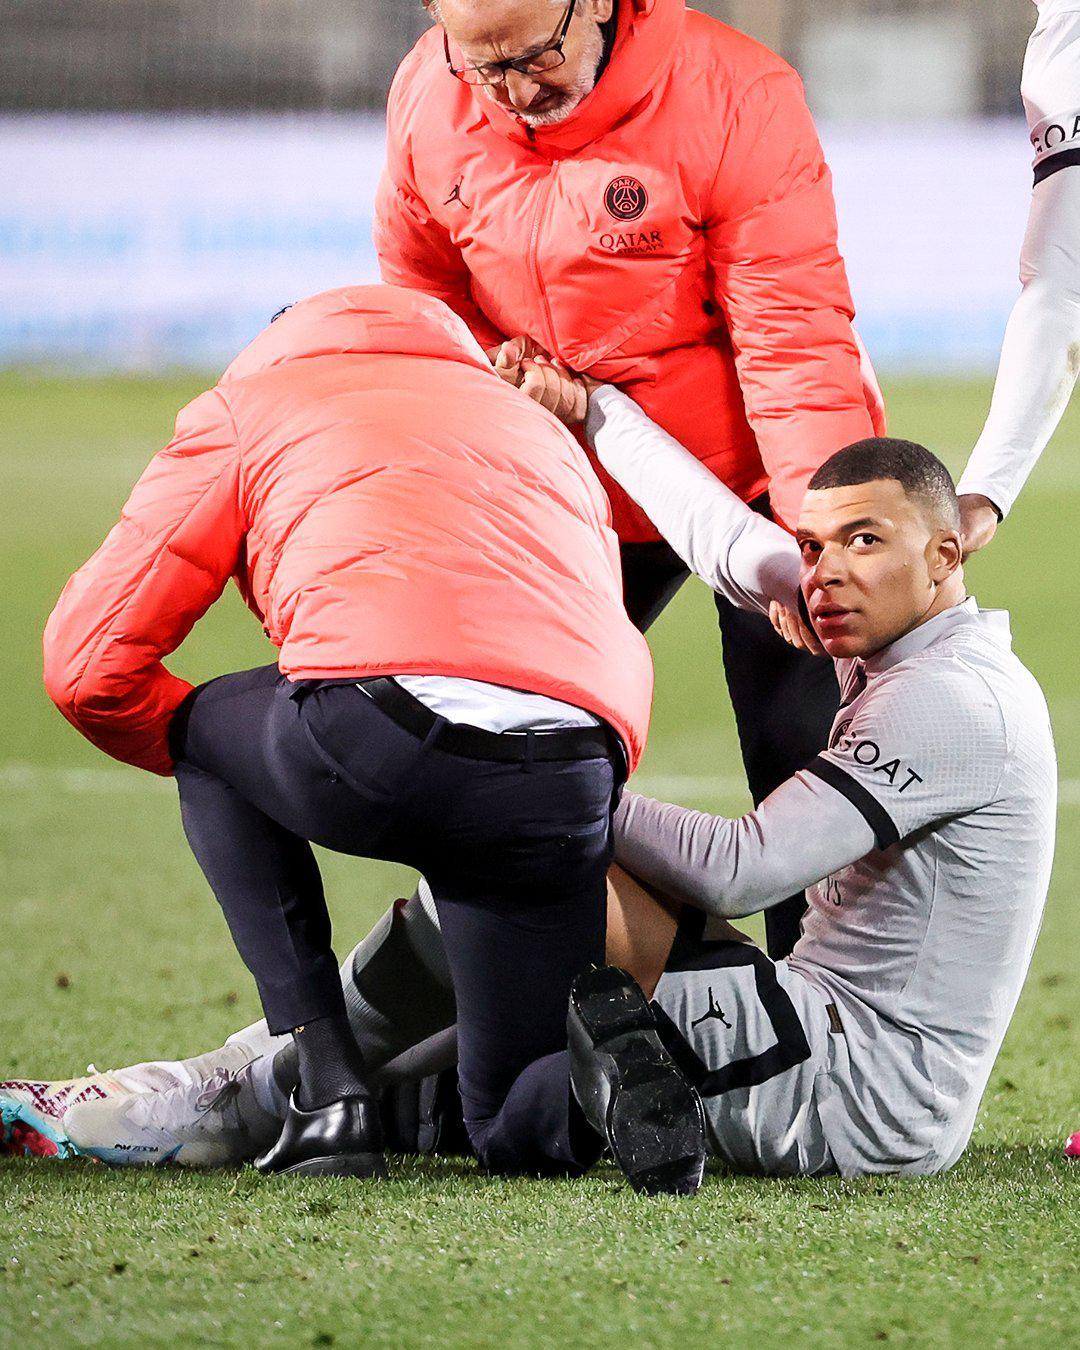 #姆巴佩无缘对阵拜仁# 巴黎官方确认，姆巴佩因大腿肌肉受伤将缺阵3周。北京2月1